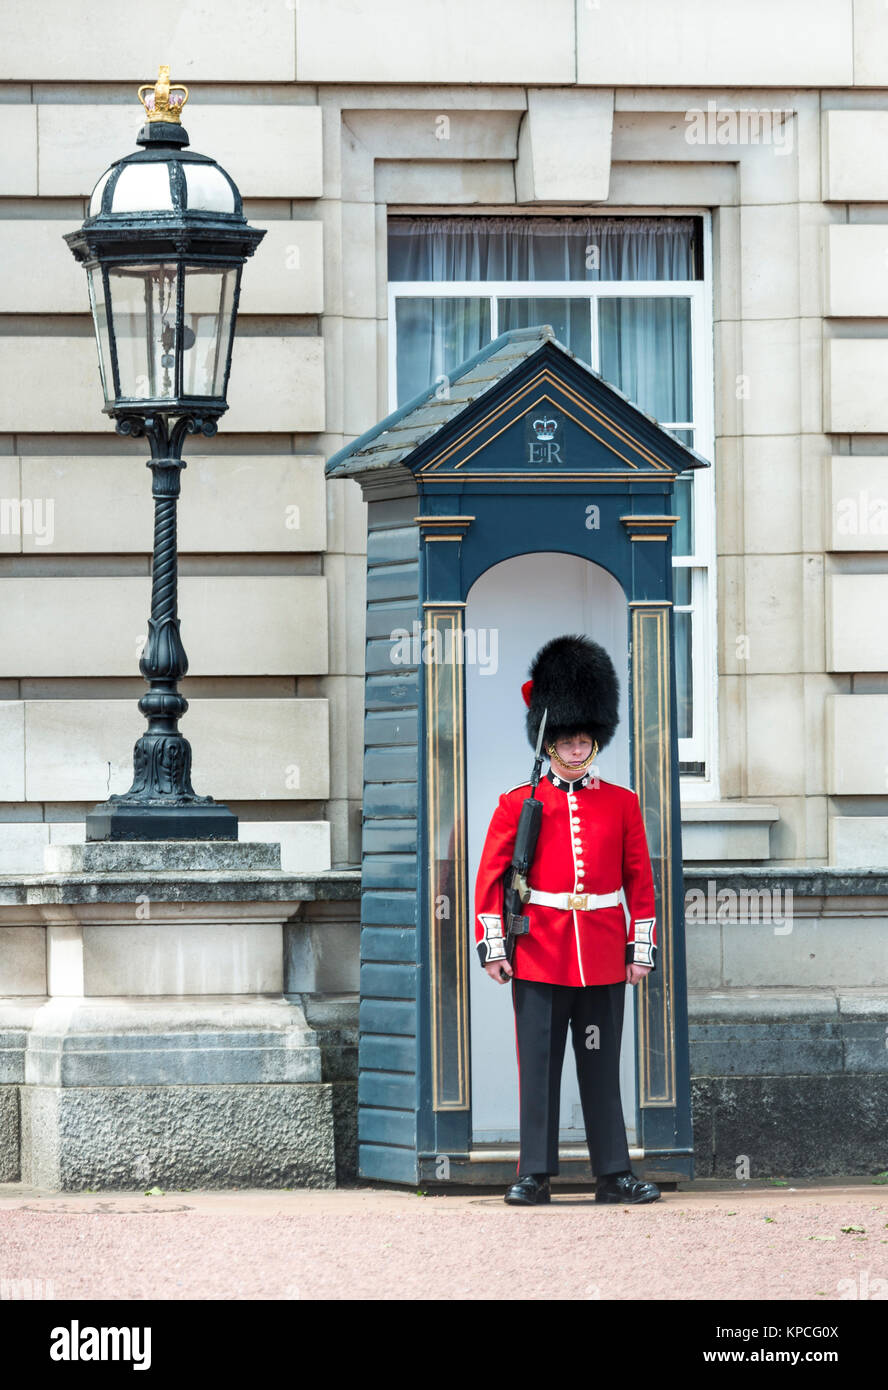 Gardien de sécurité de la Garde royale avec bearskin pac, le palais de Buckingham, Londres, Angleterre, Grande-Bretagne Banque D'Images